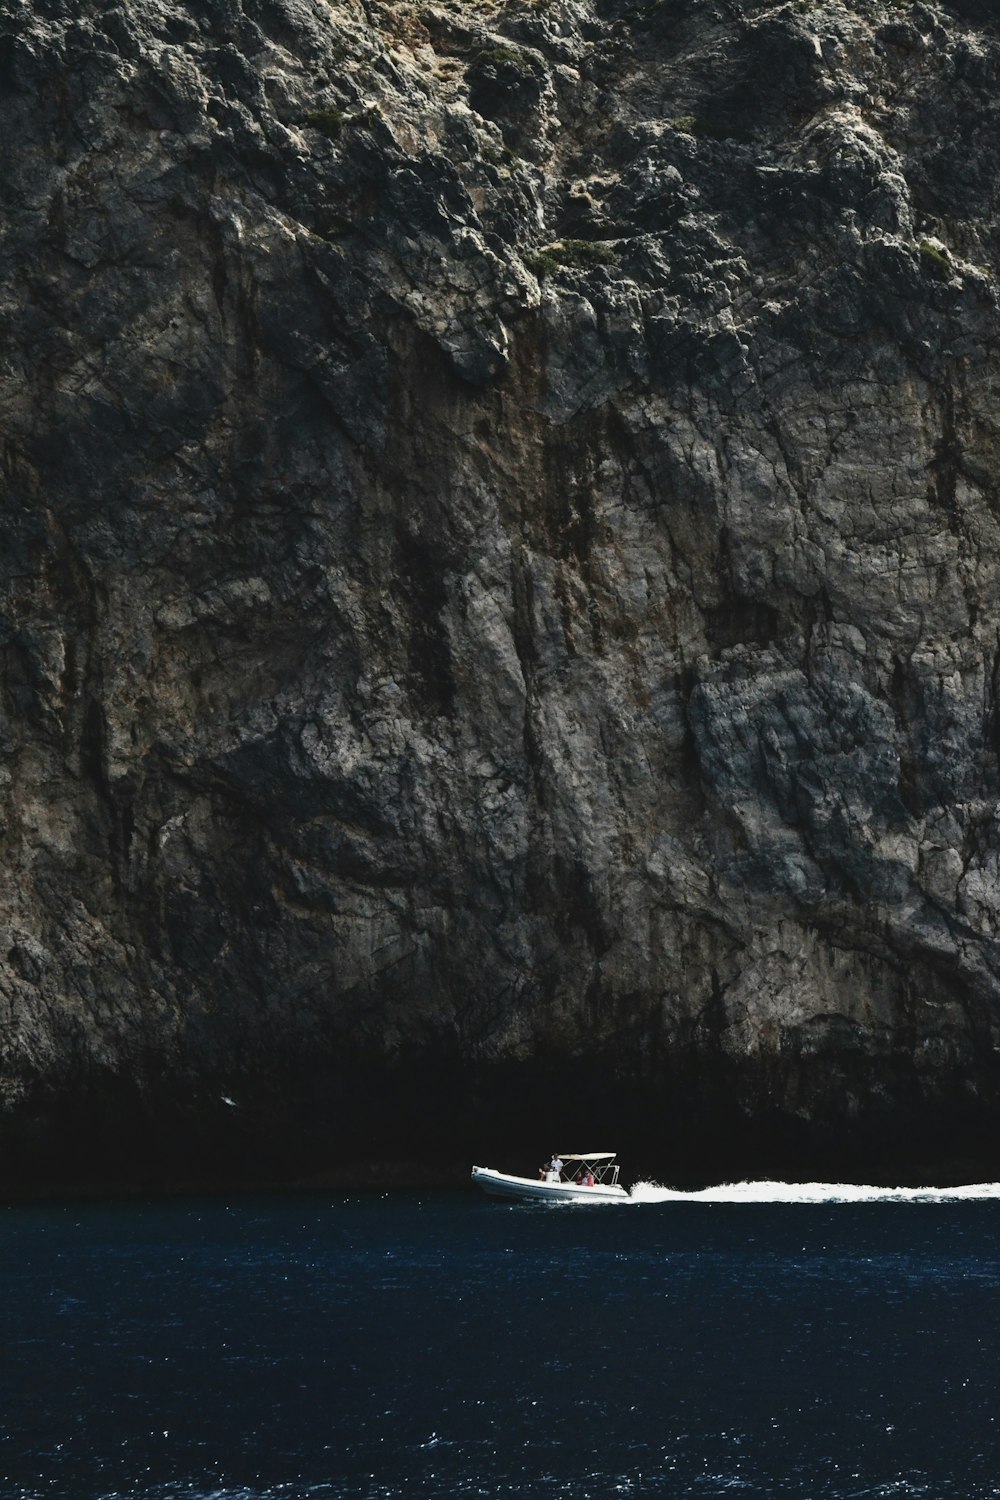 Un bote está en el agua cerca de una gran roca